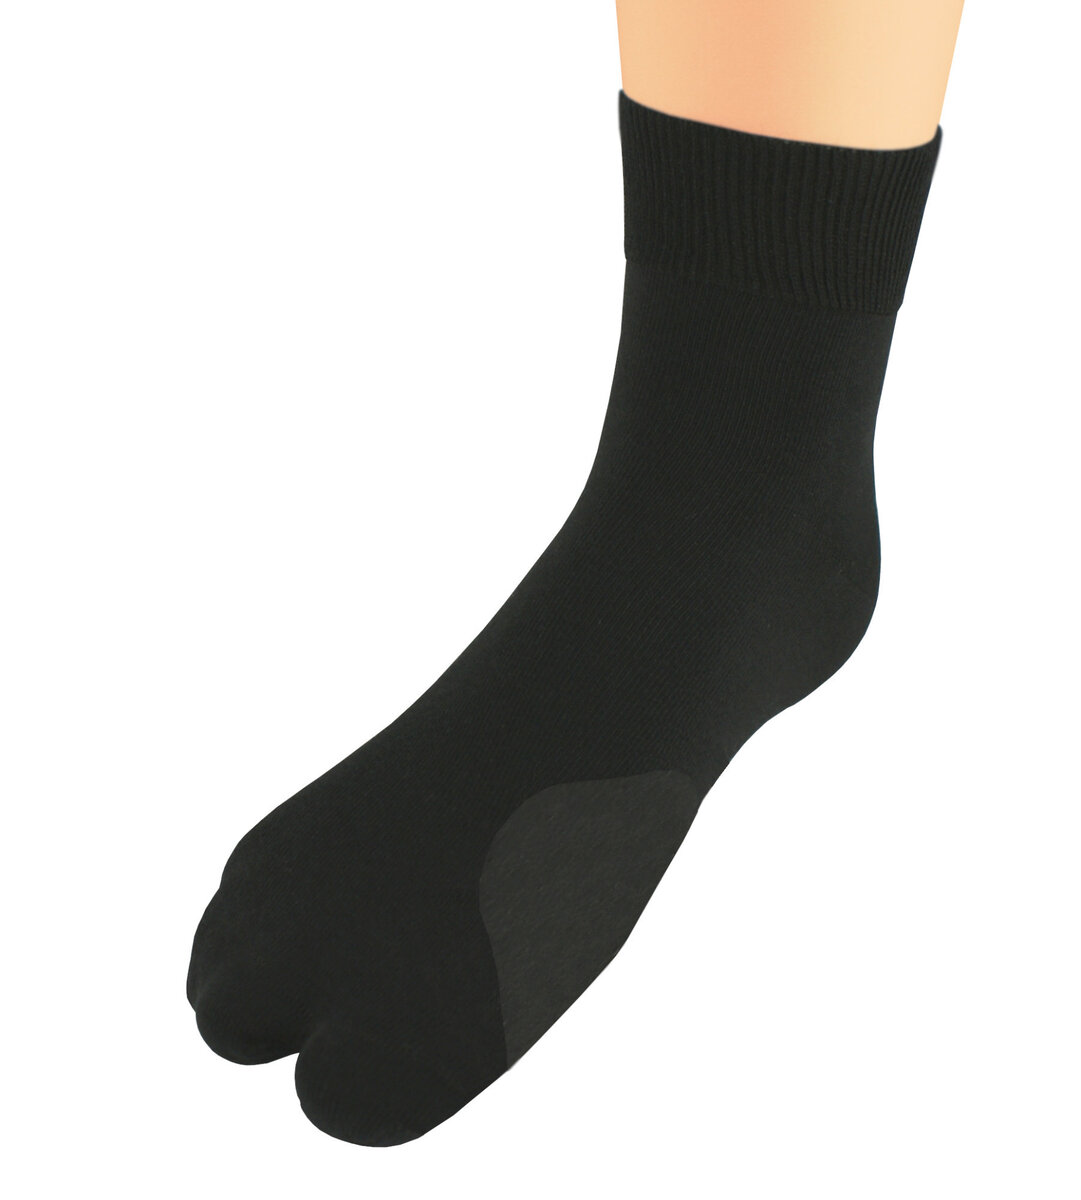 Korekční dámské ponožky Hallux černé - Bratex, černá 39-41 i10_P65524_1:2013_2:454_